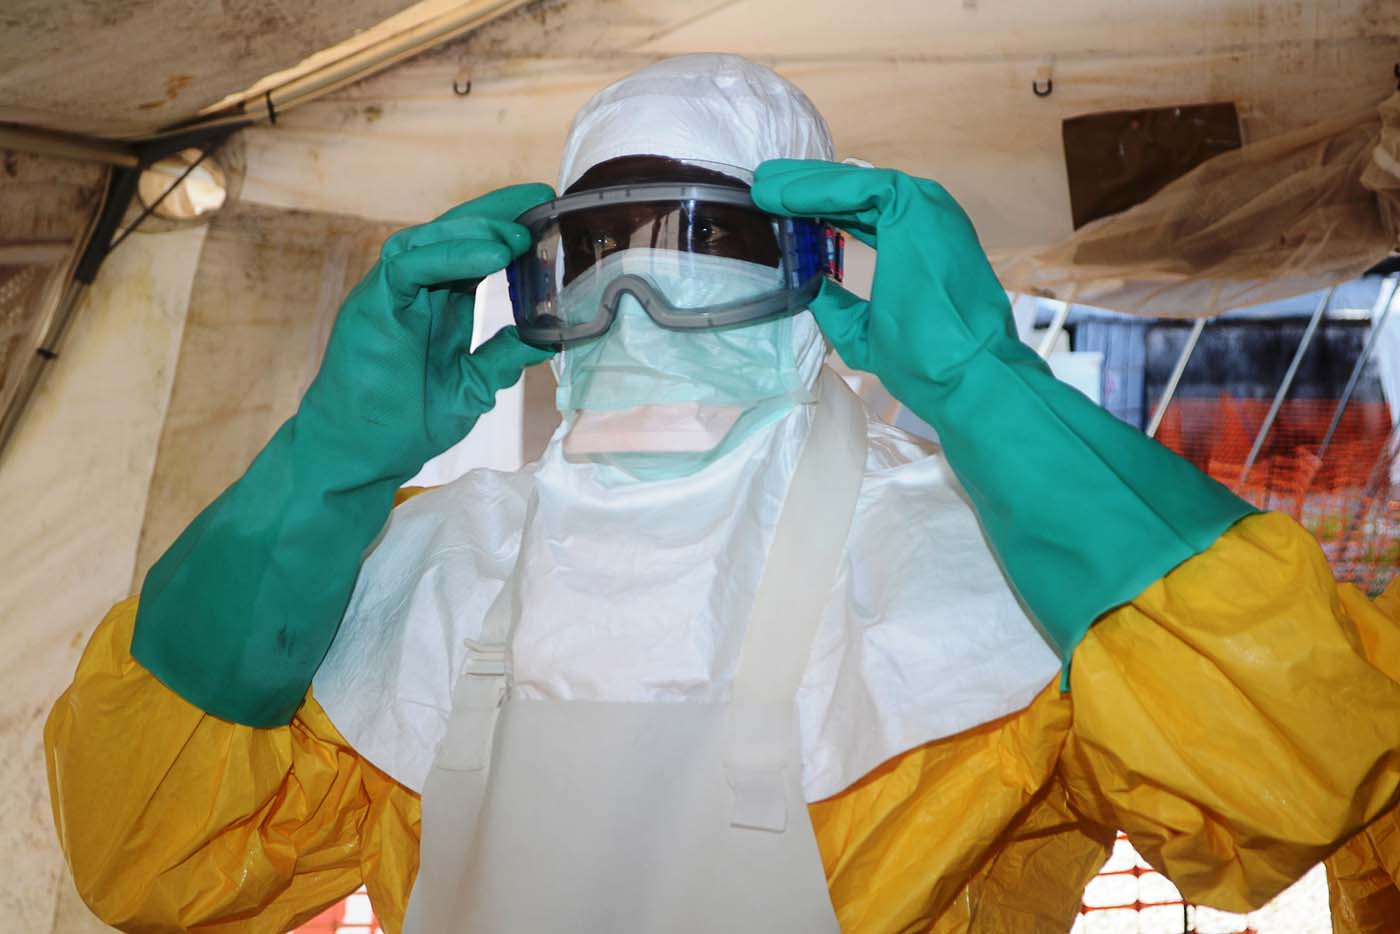 Dan de alta a la enfermera australiana aislada por ébola tras dar negativo